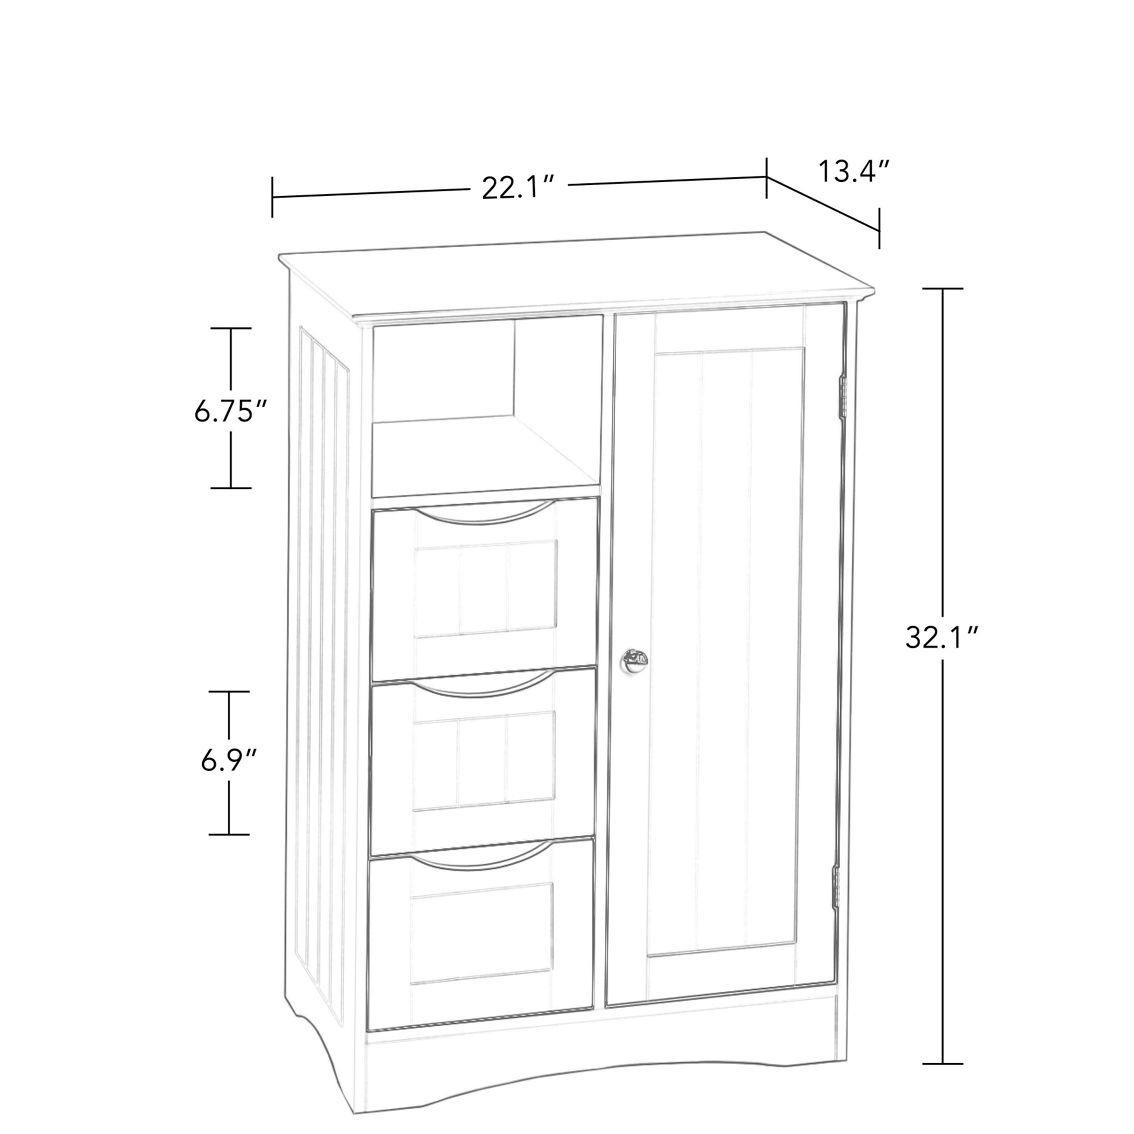 RiverRidge Ashland Single Door, 3 Drawer Floor Cabinet - Image 3 of 5